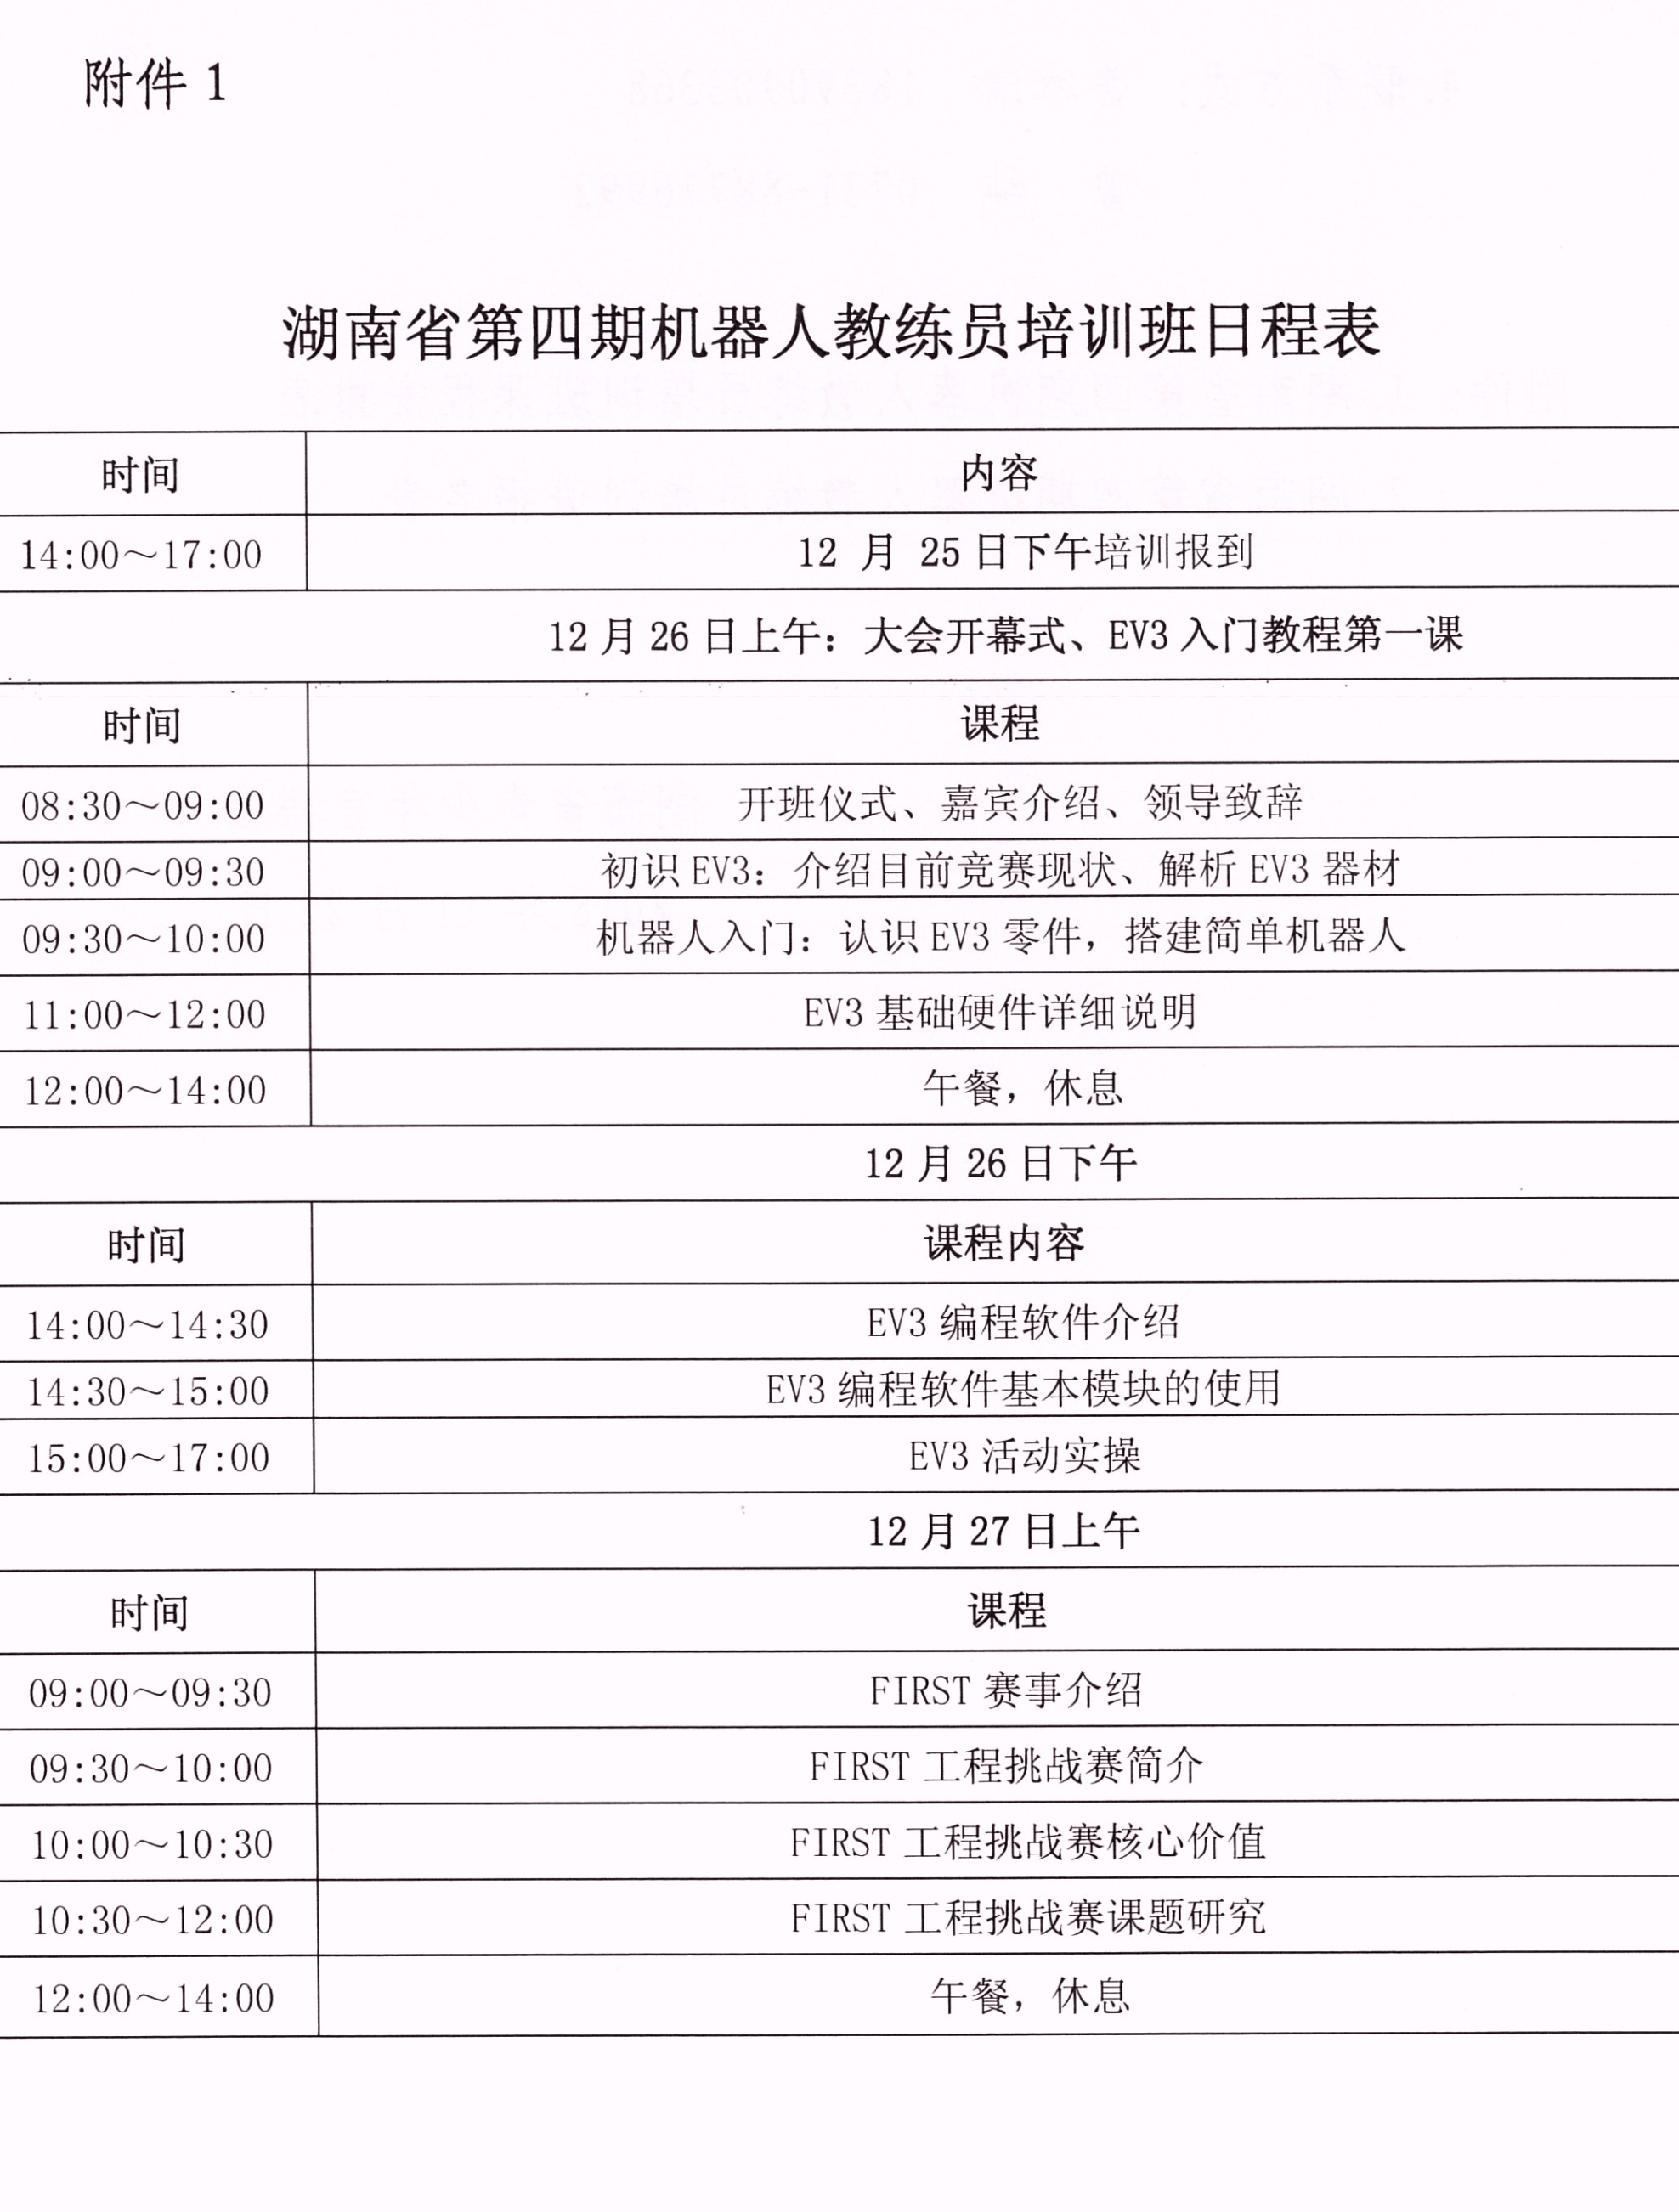 关于举办湖南省第四期机器人教练员培训班的通知_03.jpg